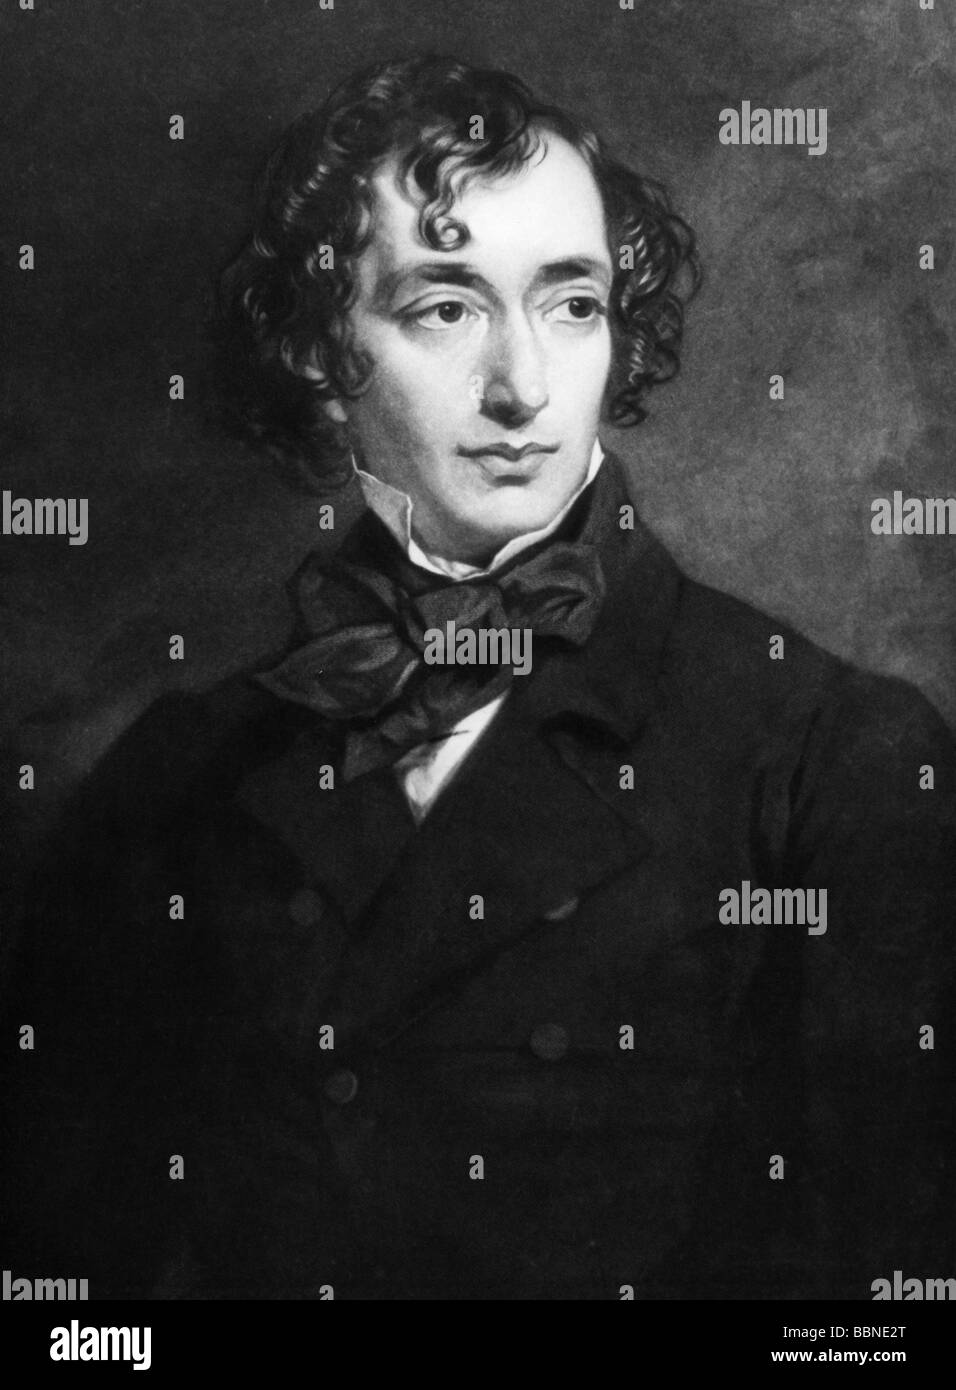 Disraeli, Benjamín, primer conde de Beaconsfield, 21.12.1804 - 19.4.1881, político británico, de media longitud, grabado por Zobel después de pintar por Grant, , Foto de stock